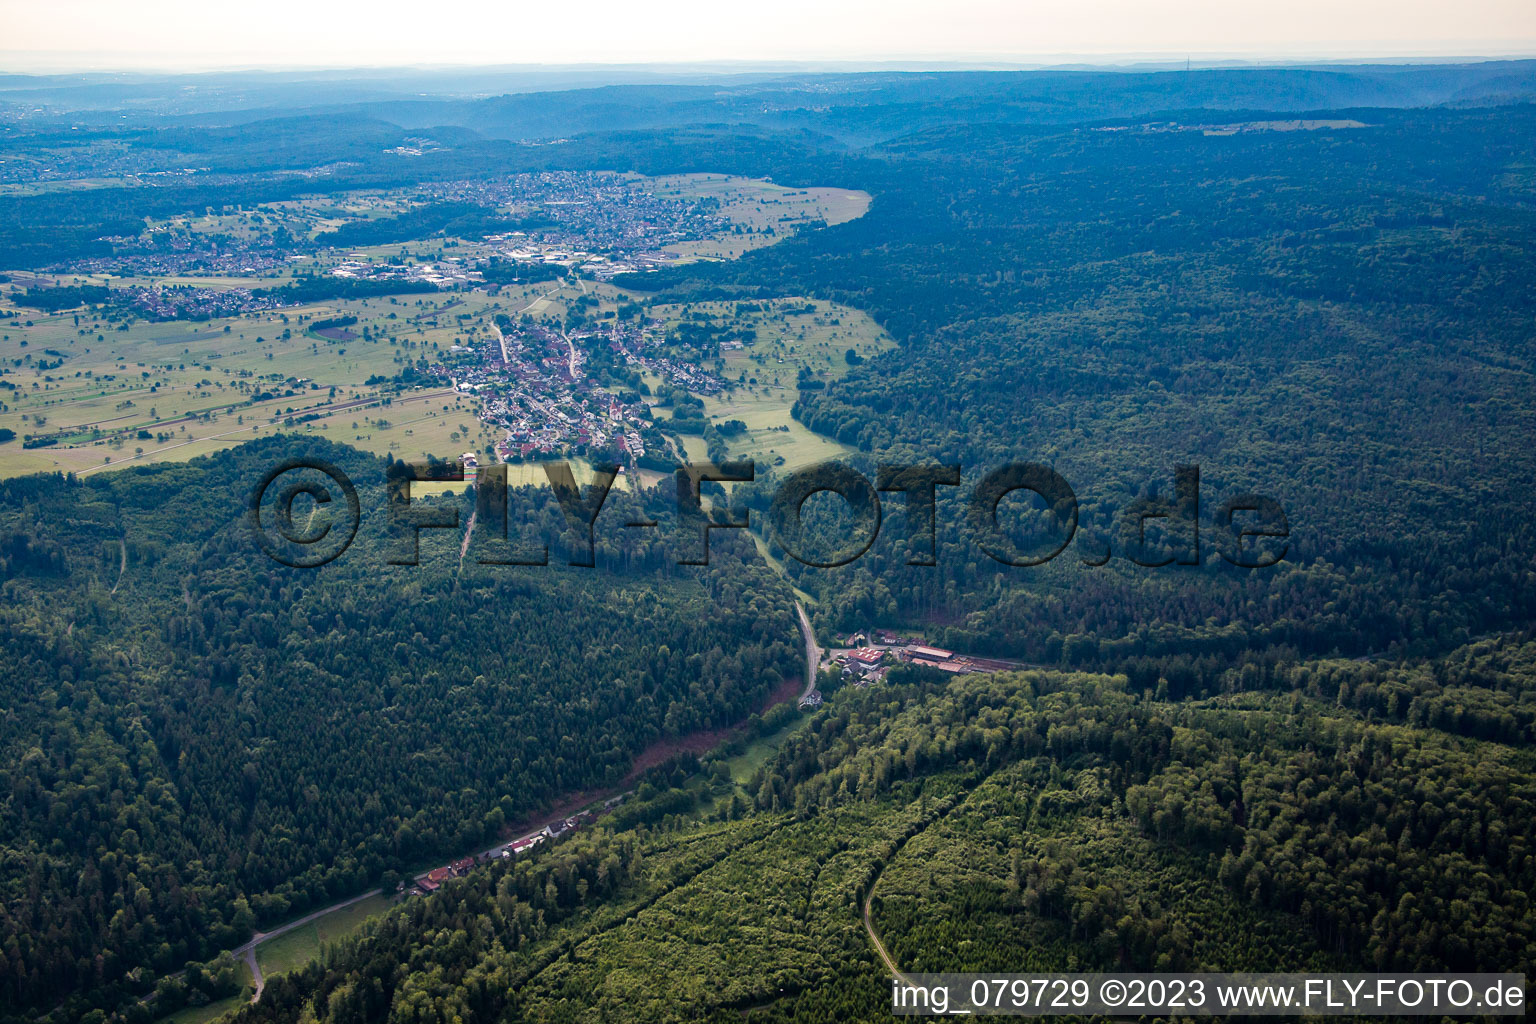 Vue aérienne de Quartier Langenalb in Straubenhardt dans le département Bade-Wurtemberg, Allemagne